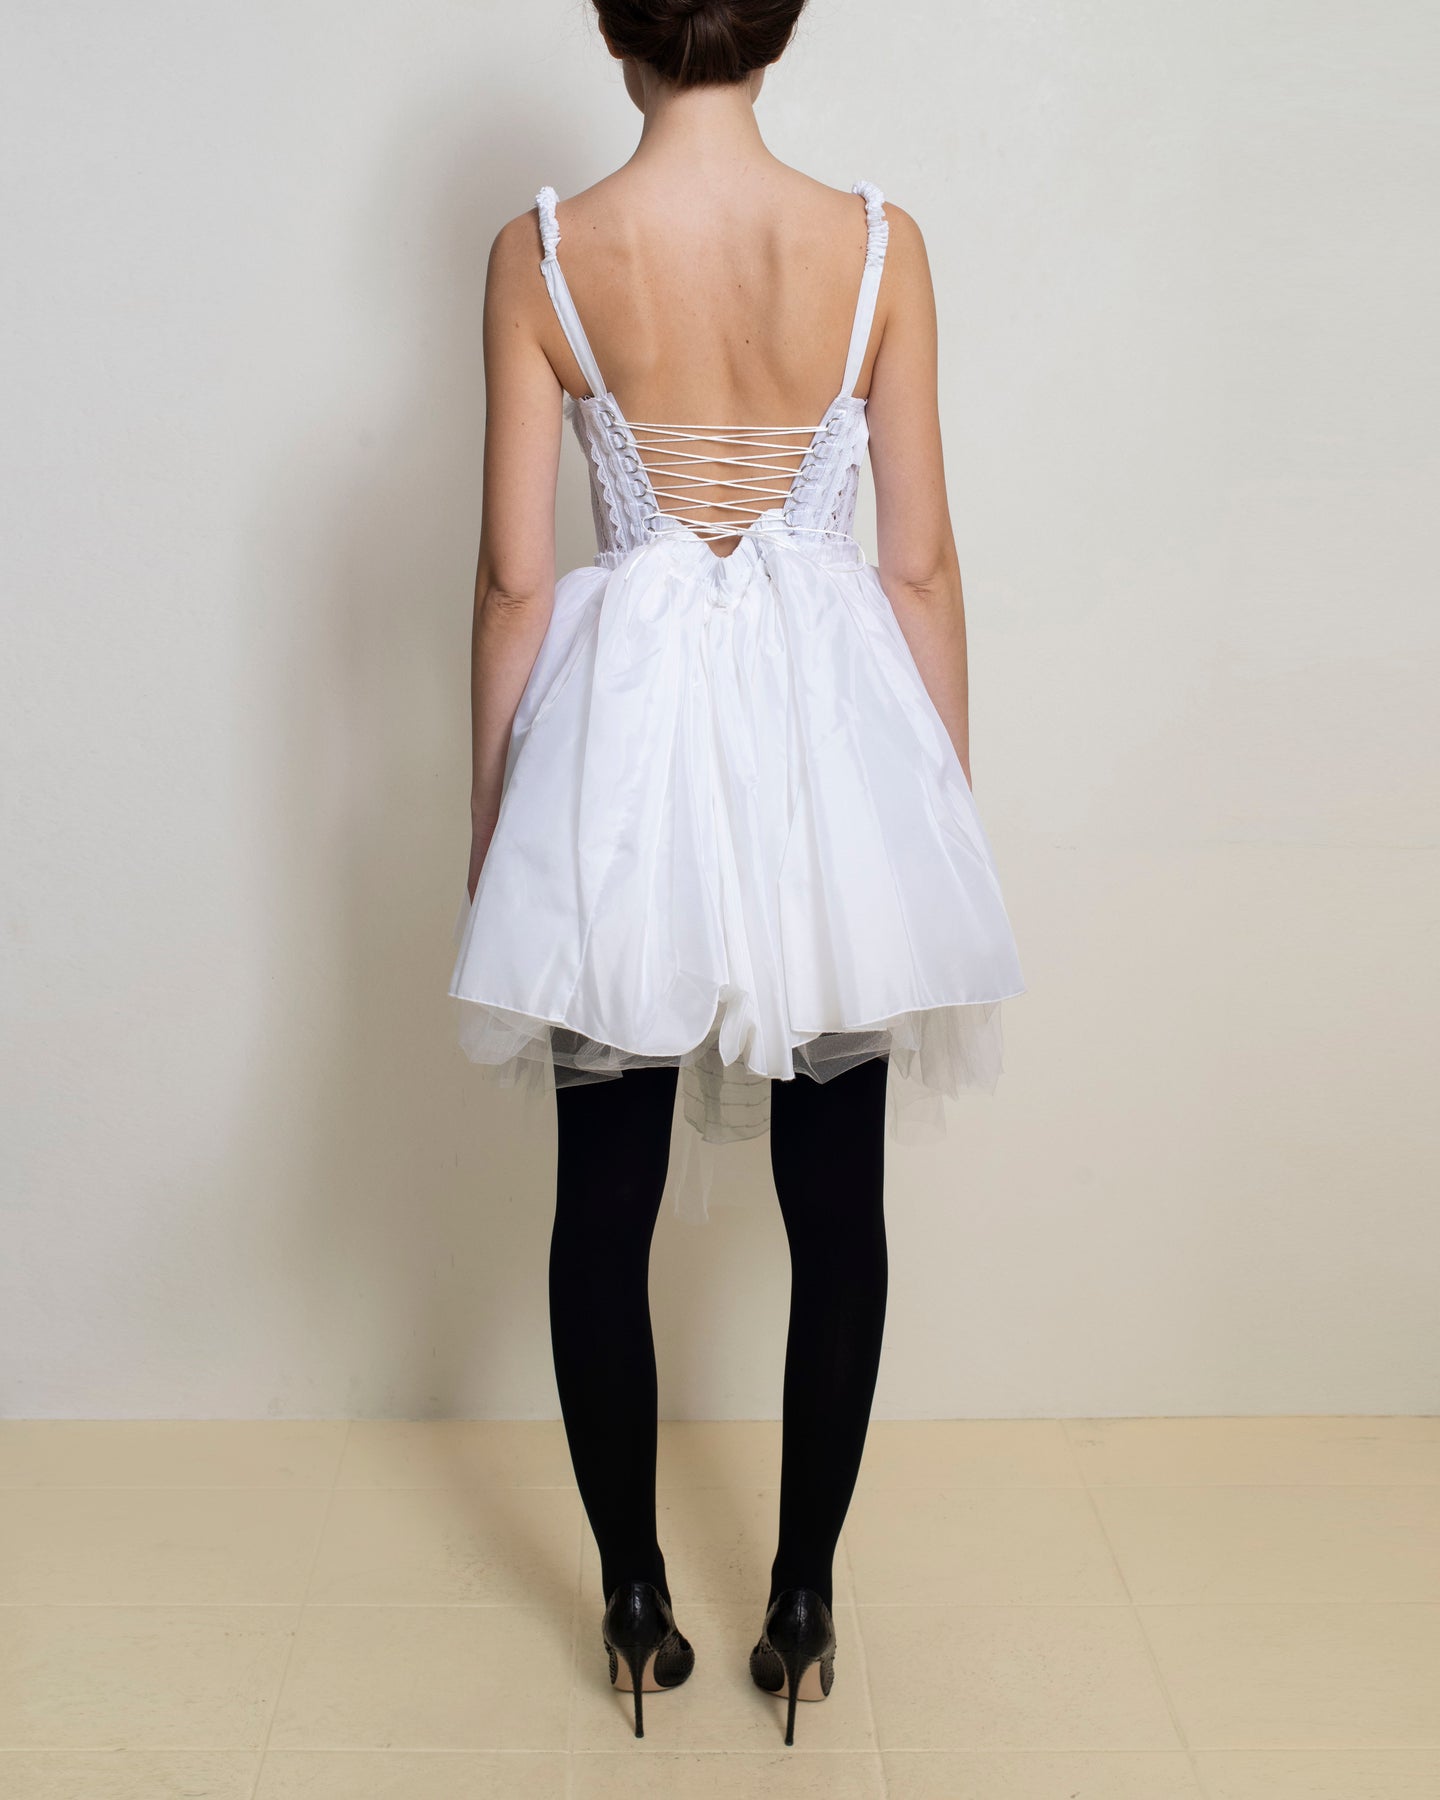 Meg Beck - White Lace Molly Dress